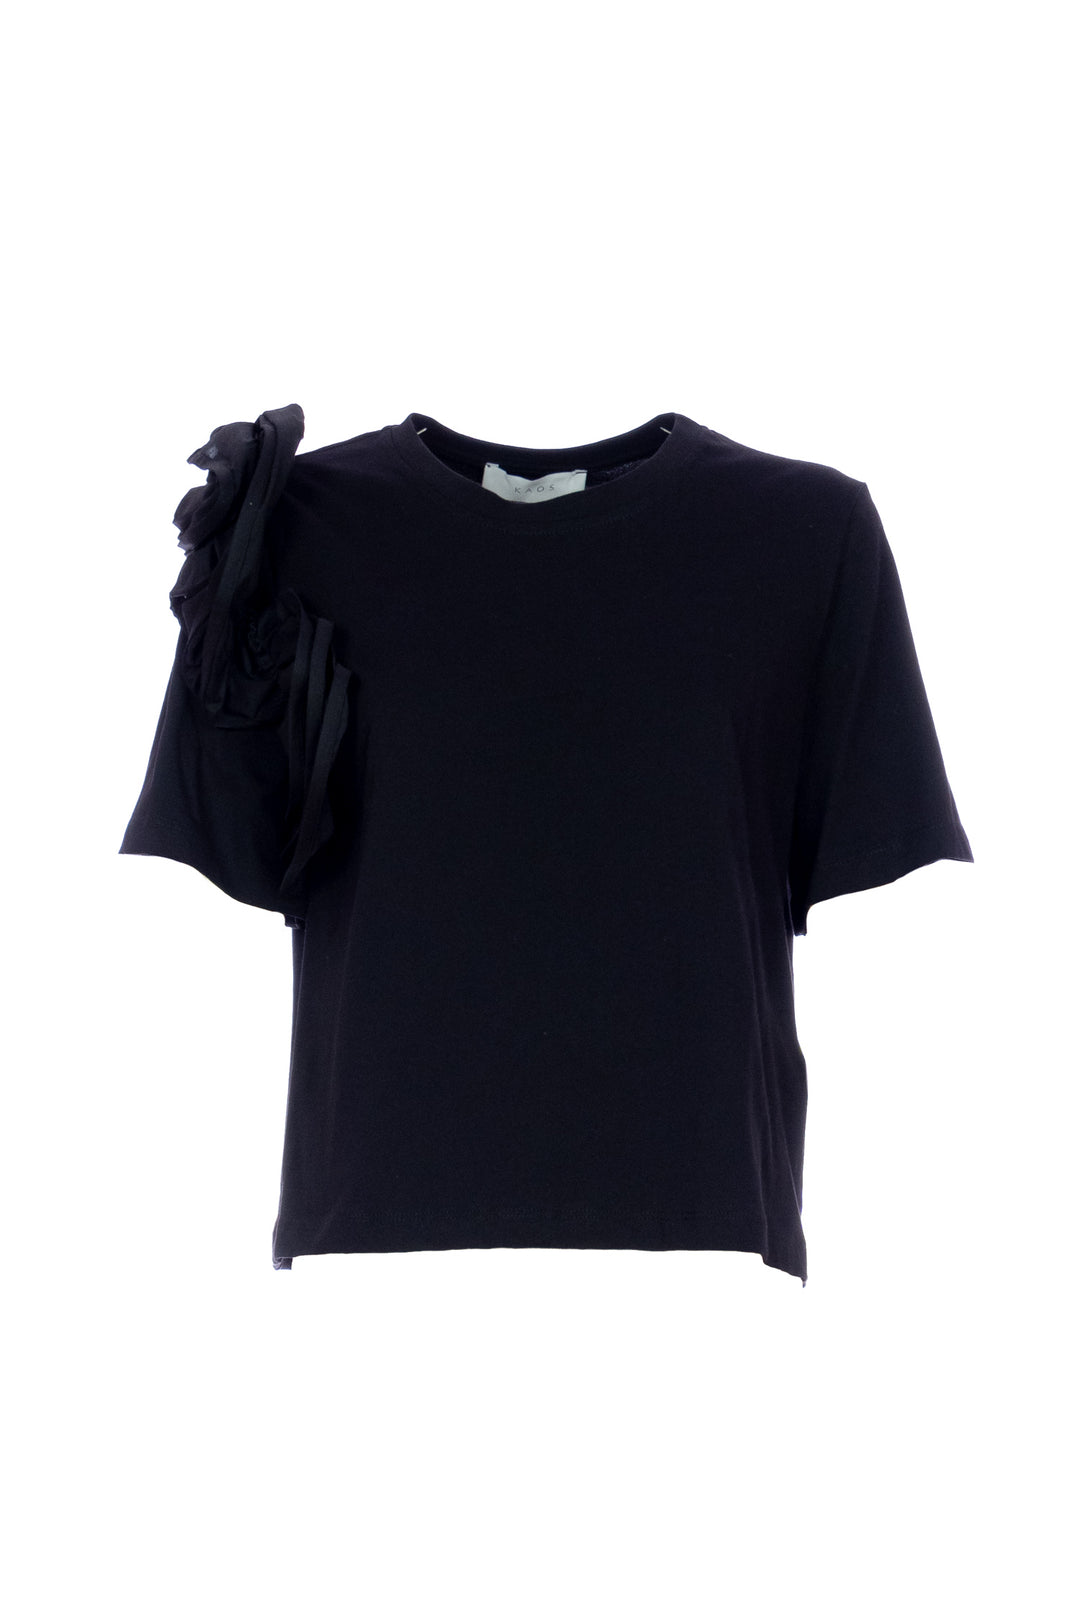 KAOS T-shirt nera in cotone con volant - Mancinelli 1954